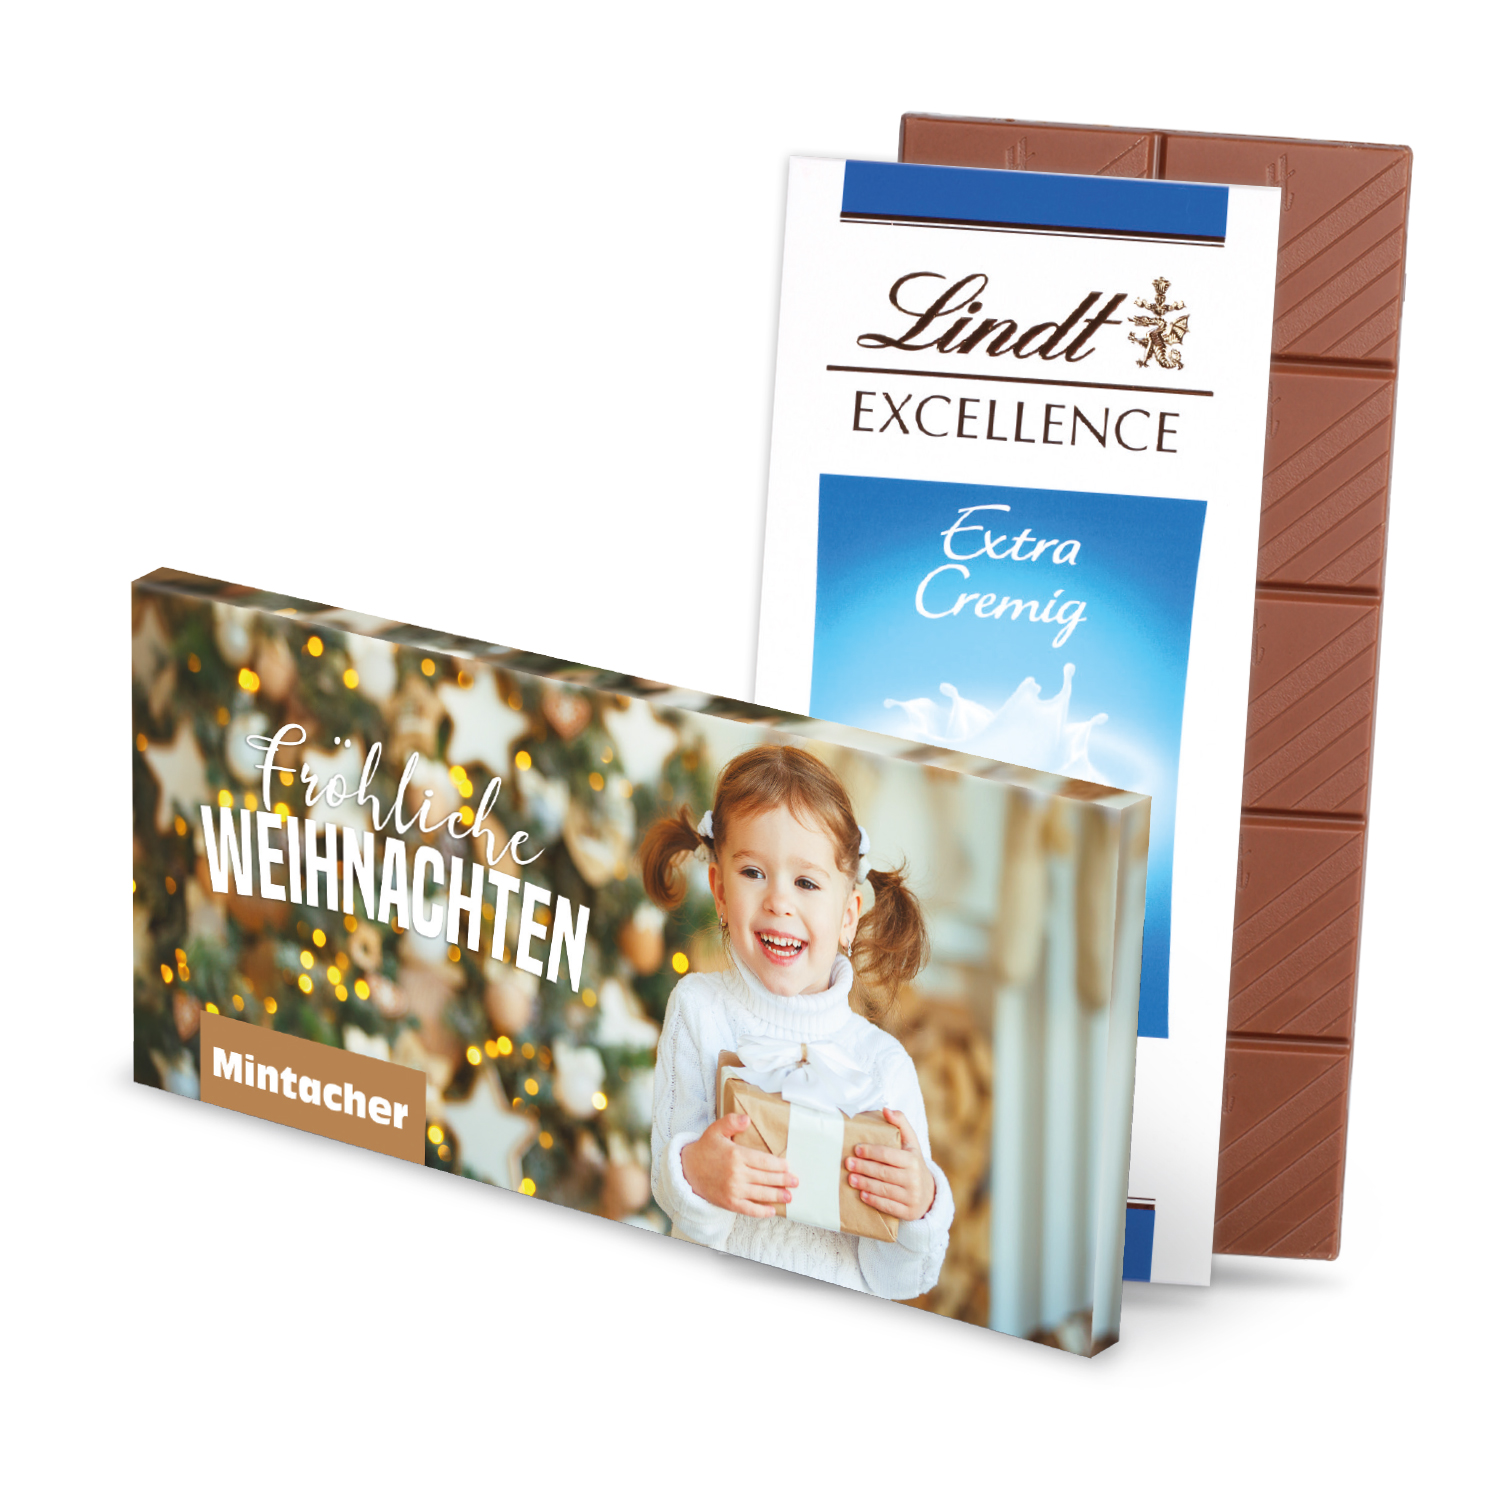 Schokoladentafel Excellence von Lindt, Schokolade